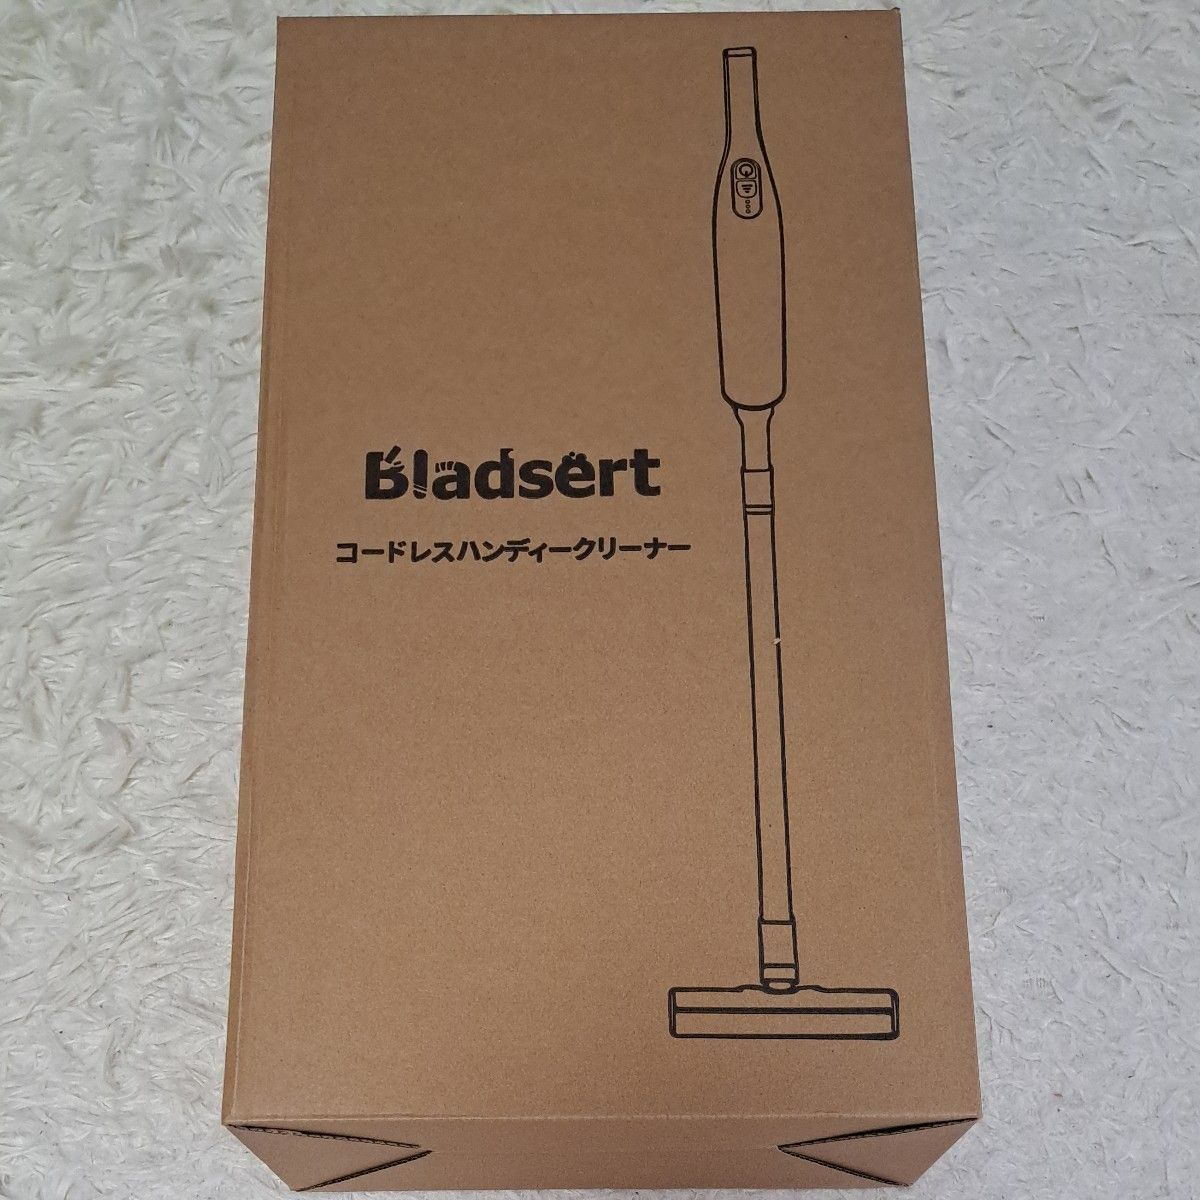 掃除機 Bladsert 掃除機コードレス  コードレス掃除機 自走式